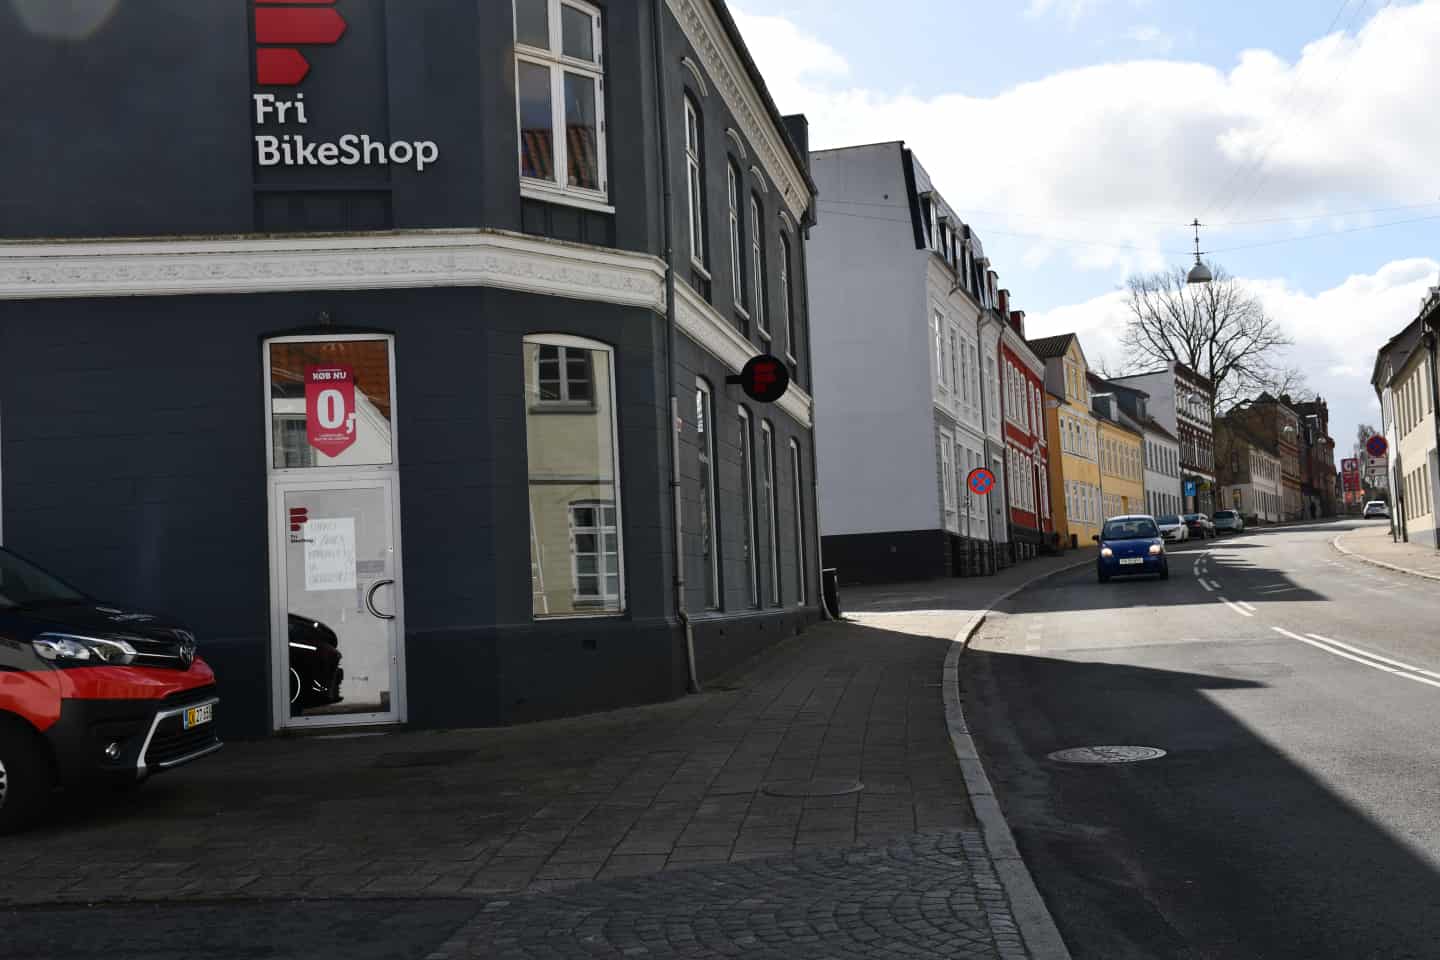 ældste cykelforretning holdt flyttedag | ugeavisen.dk